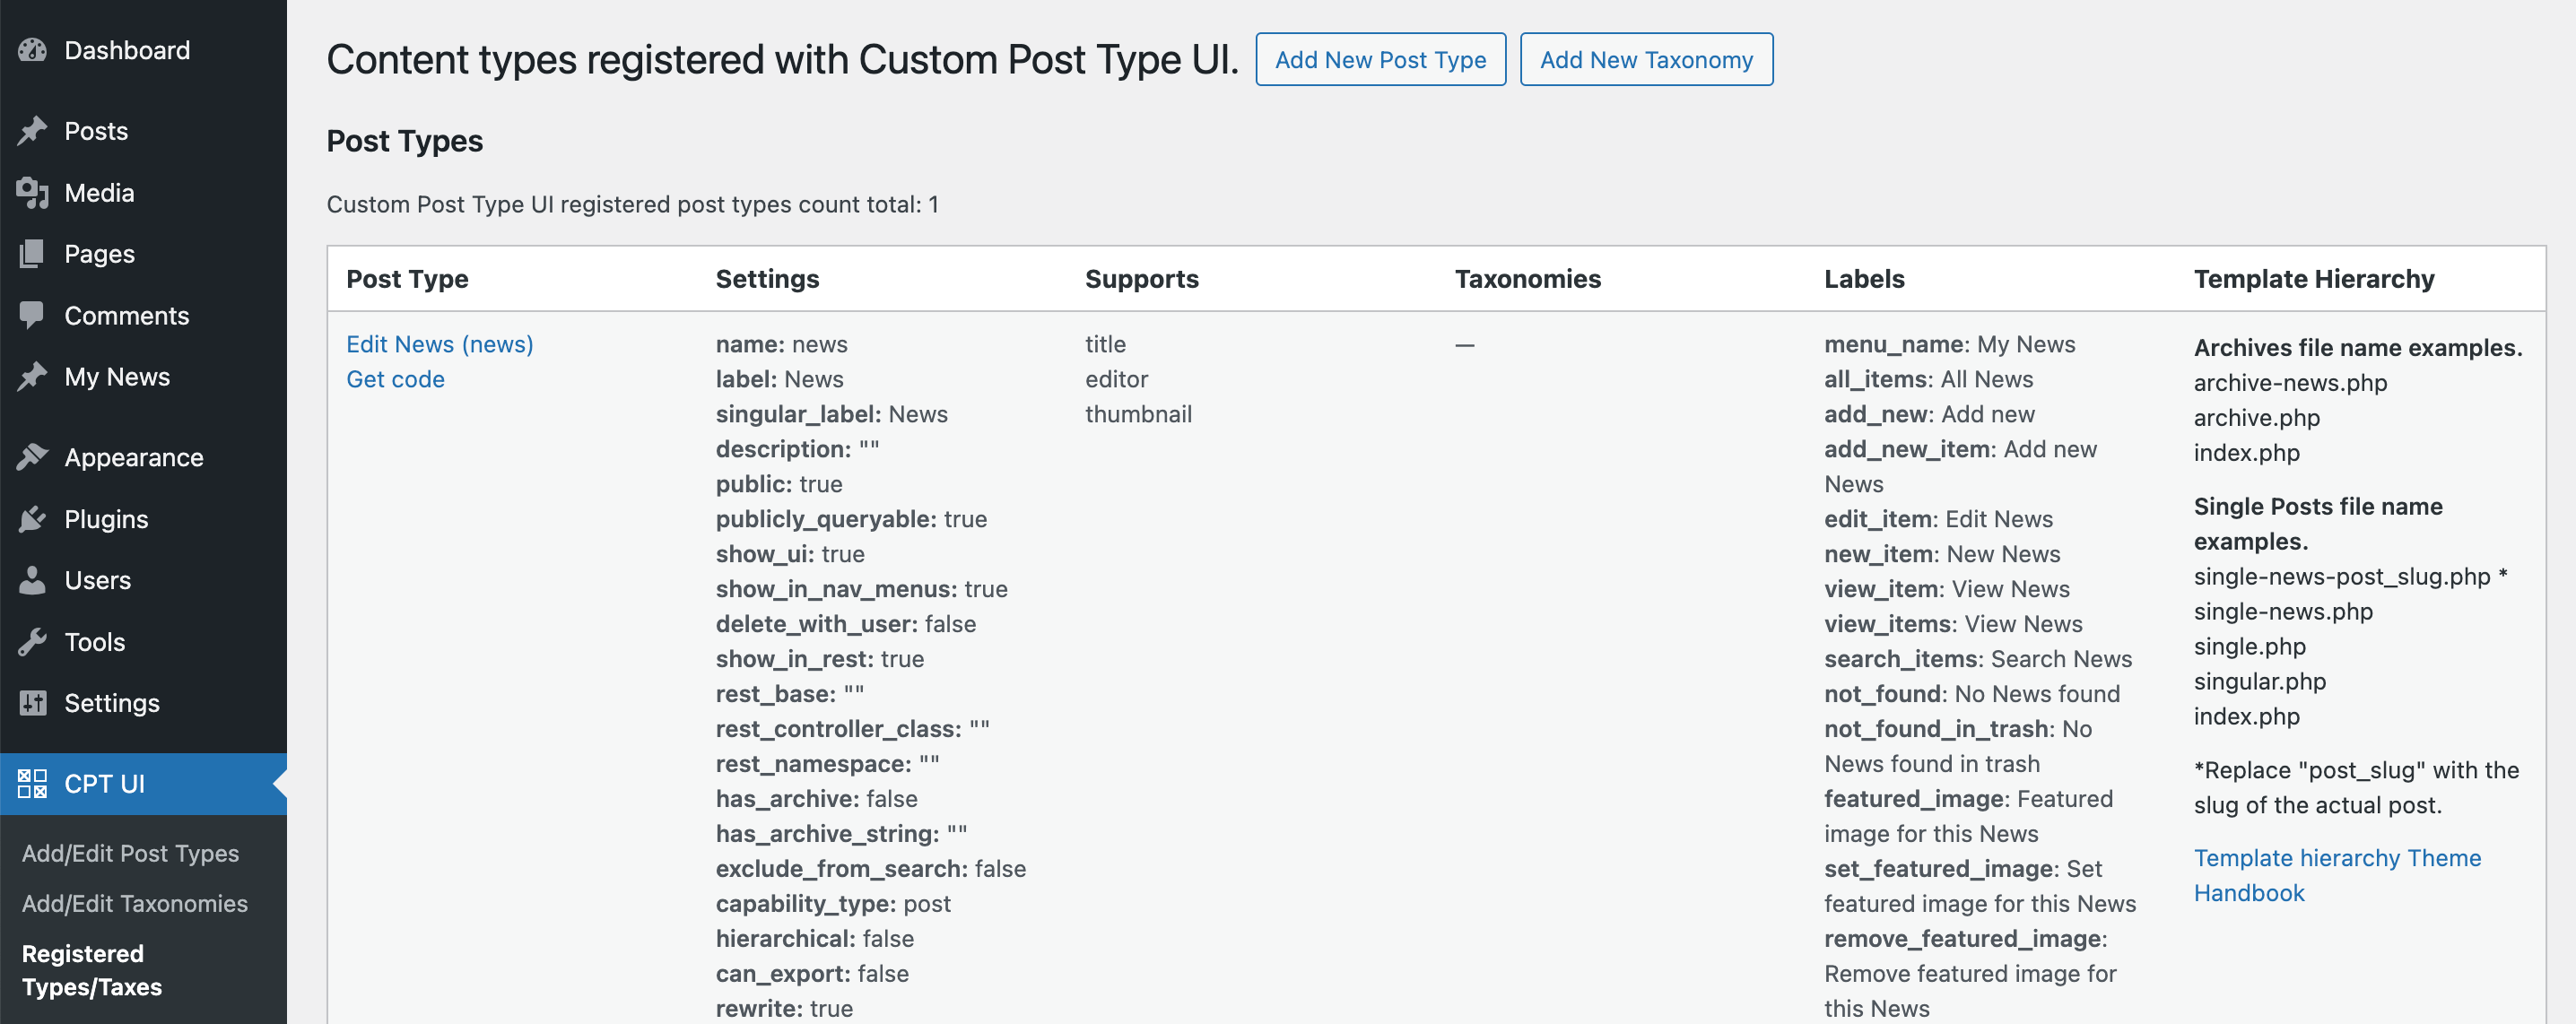 نظرة عامة على أنواع المنشورات المخصصة في WordPress التي تم إنشاؤها بواسطة البرنامج الإضافي Custom Post Type UI.